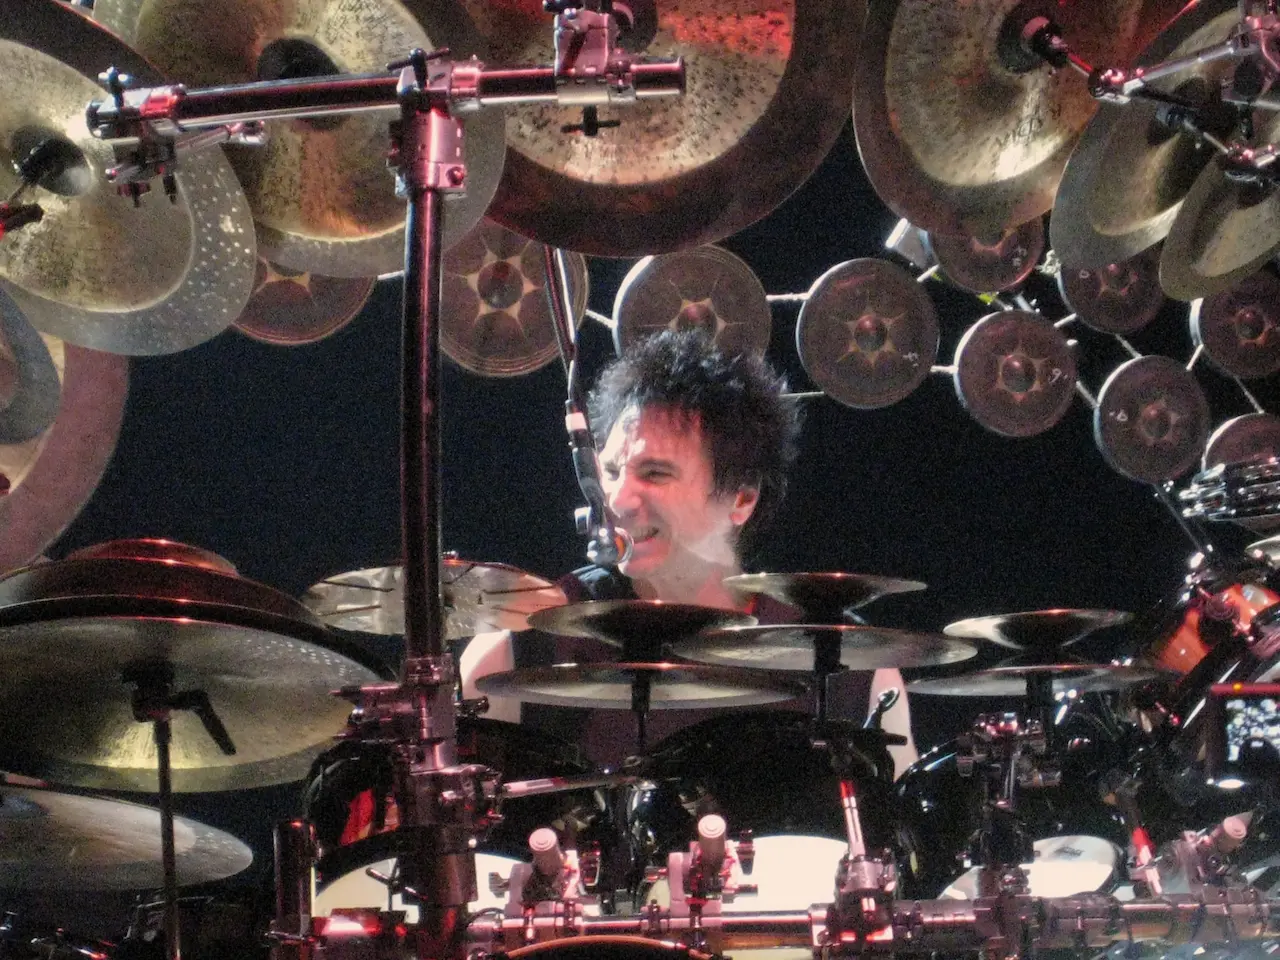 Bozzio performing in 2006